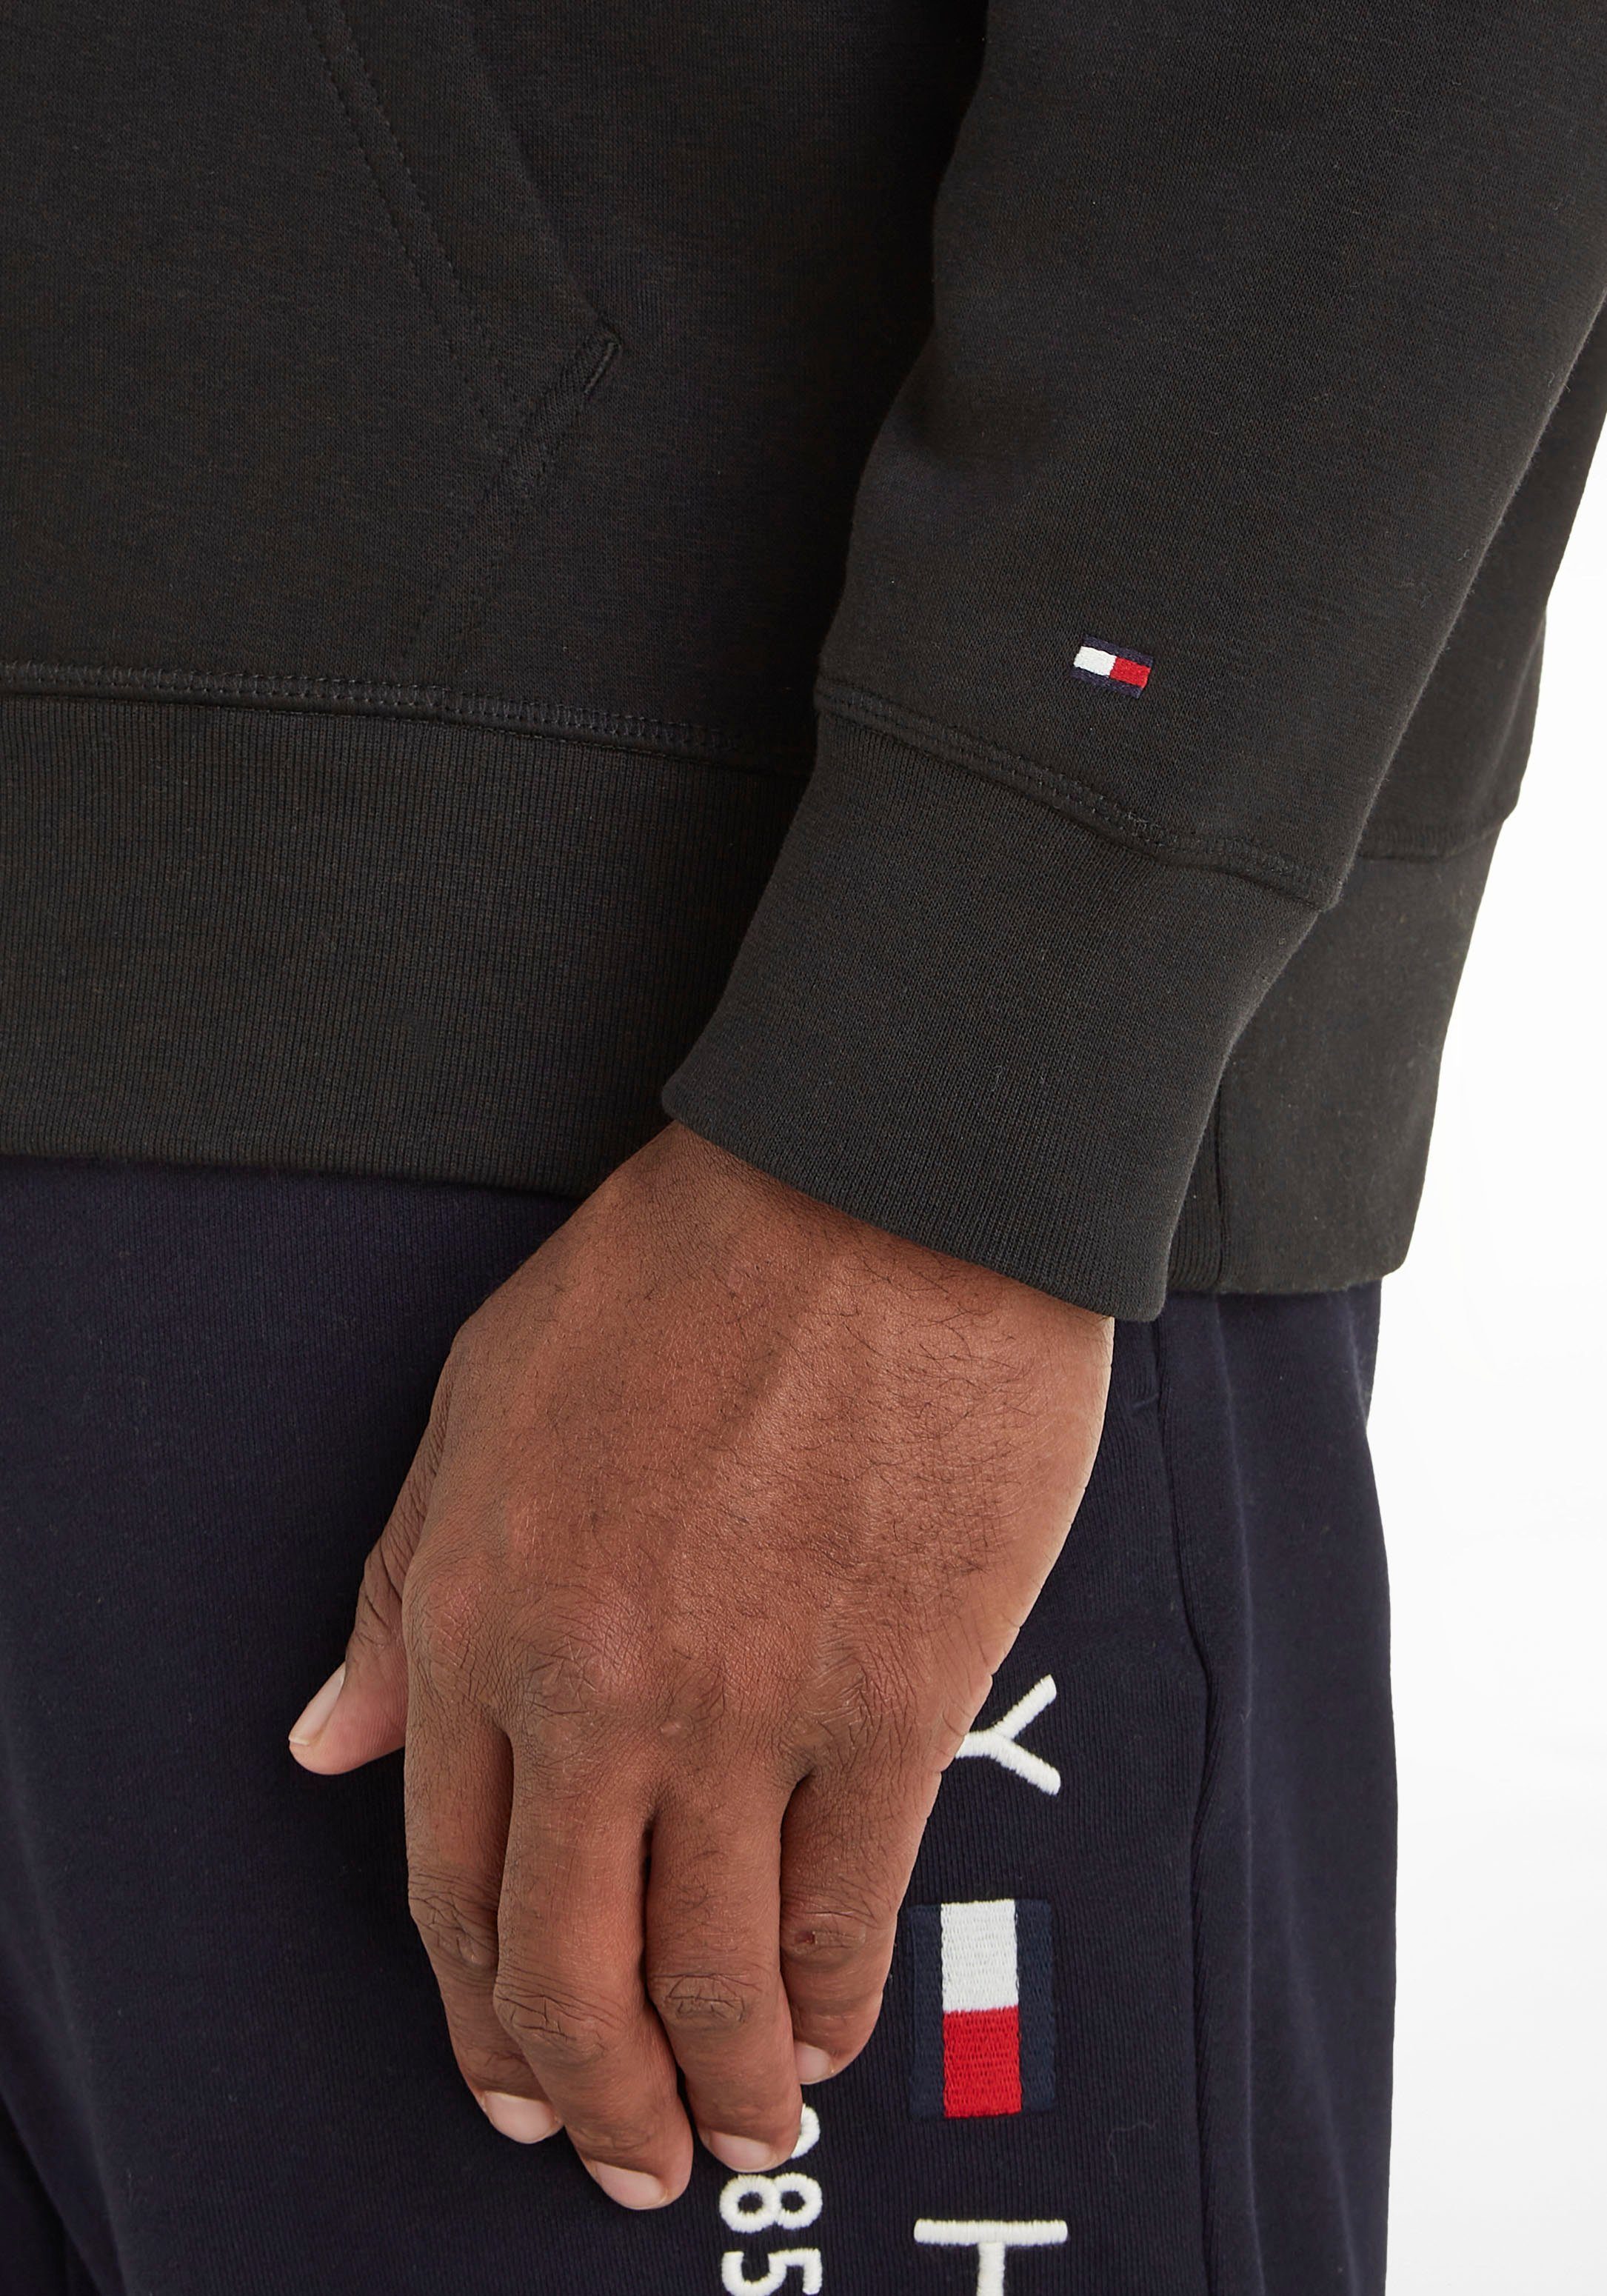 Big Hilfiger Kapuzensweatshirt Tommy Tall & Bundabschlüssen mit schwarz breiten